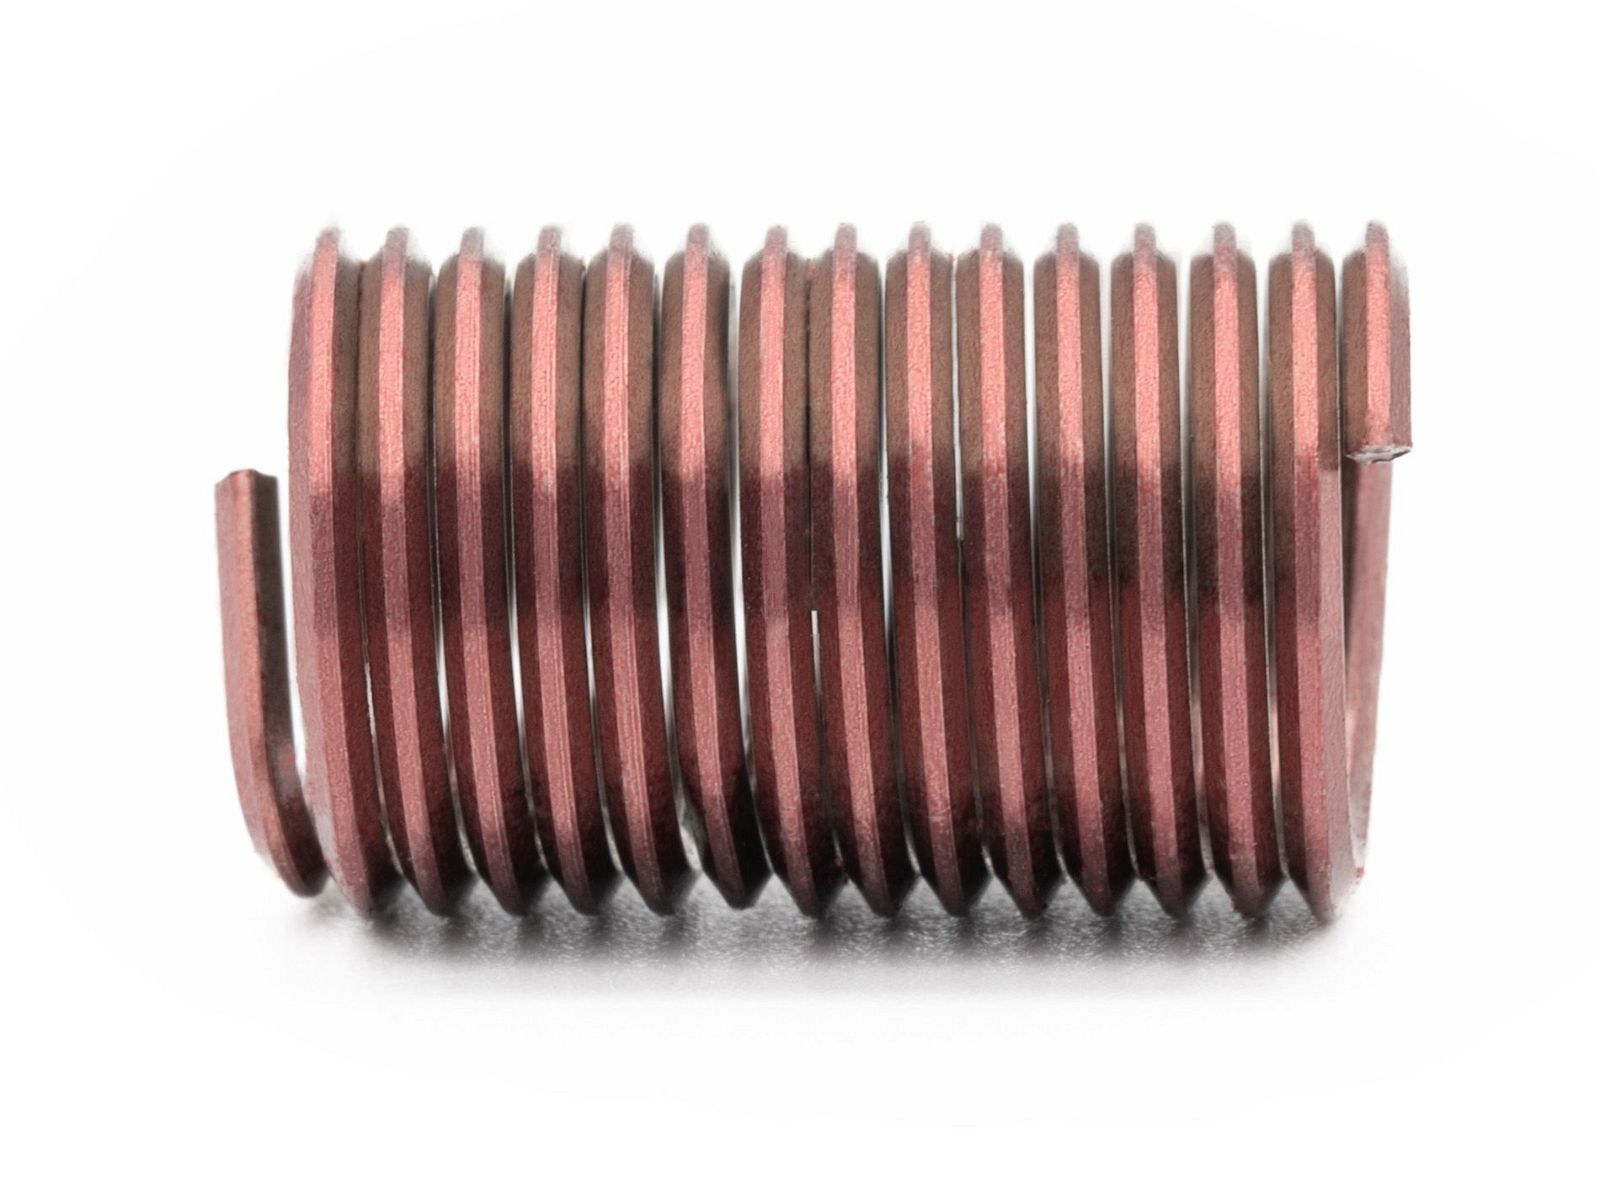 BaerCoil Wire Thread Inserts BSW 7/16 x 14 - 2.5 D (27.78 mm) - screw grip (screw locking) - 100 pcs.